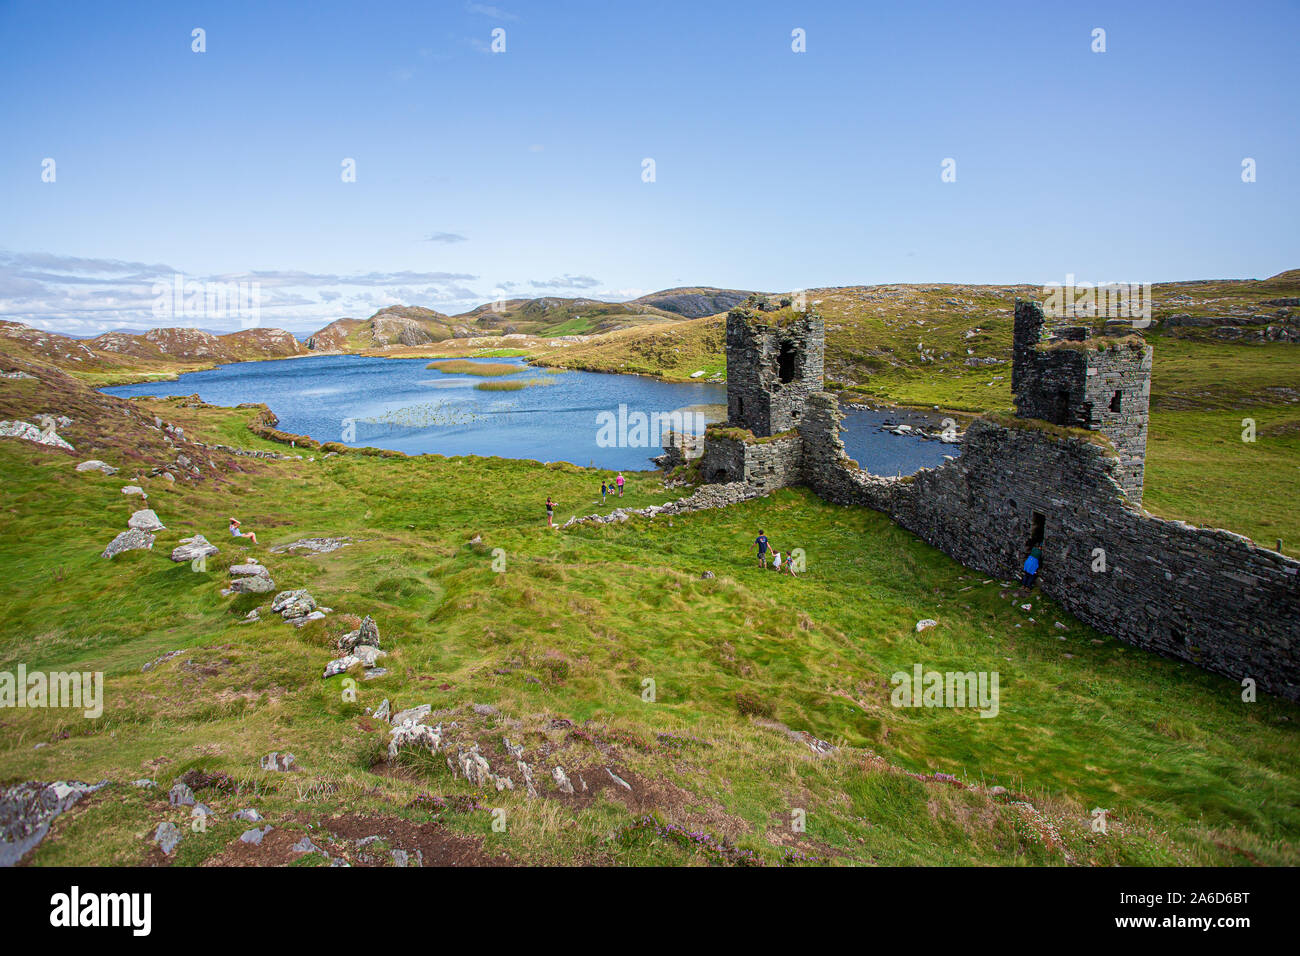 Pintorescas ruinas de tres castillos de cabeza o Dunlough castillo situado en la cima de los acantilados en el extremo norte de la península de Mizen. Paisajes irlandeses. Foto de stock